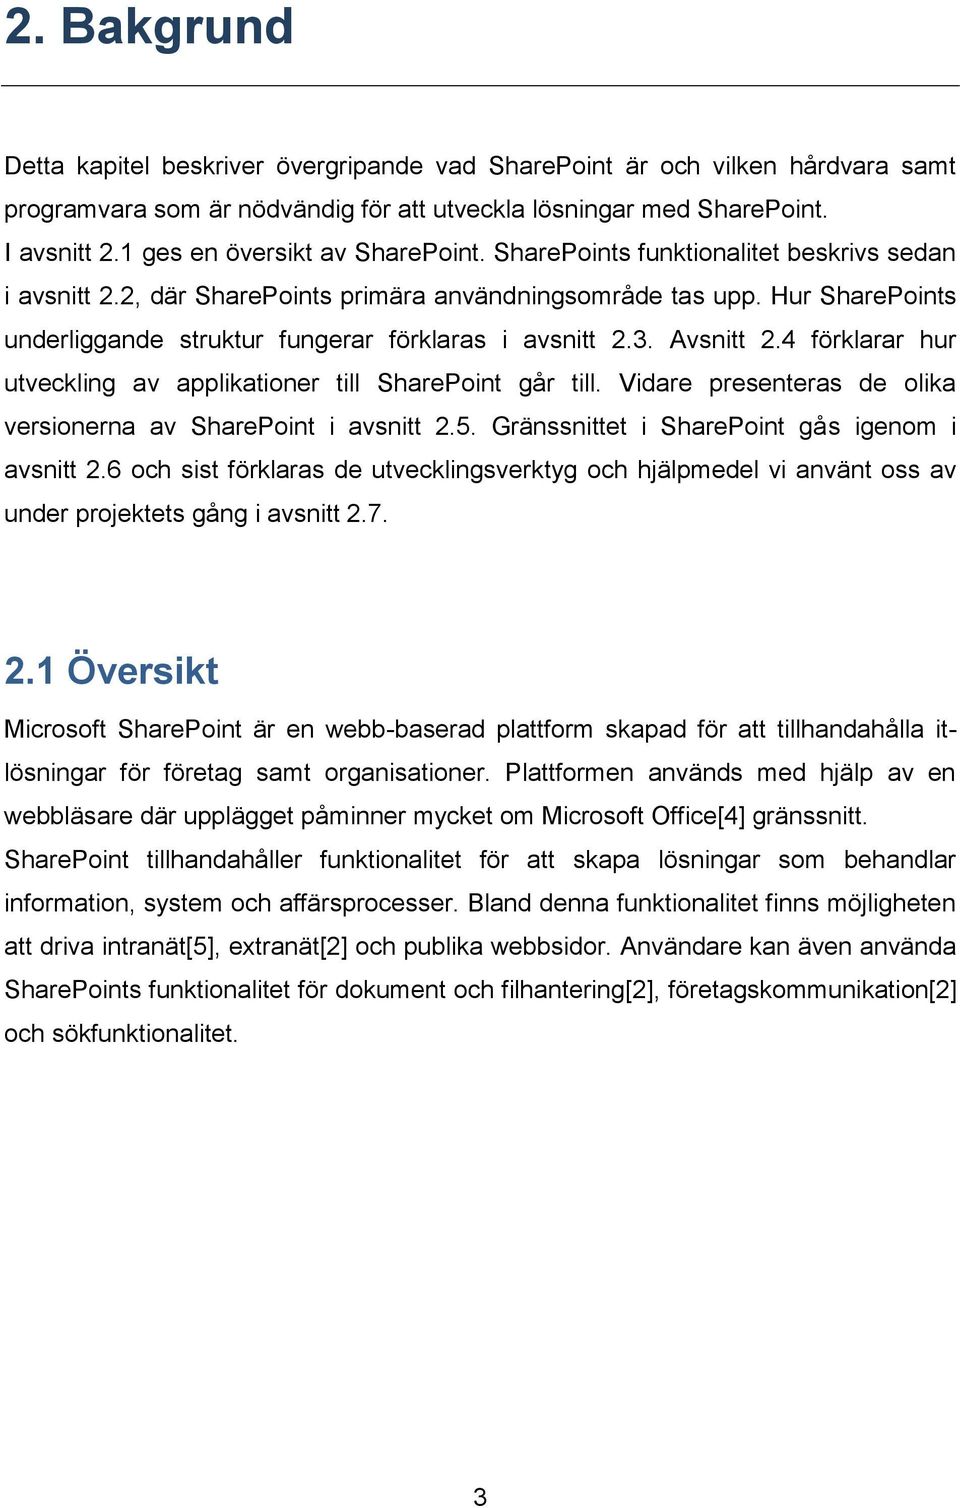 Hur SharePoints underliggande struktur fungerar förklaras i avsnitt 2.3. Avsnitt 2.4 förklarar hur utveckling av applikationer till SharePoint går till.